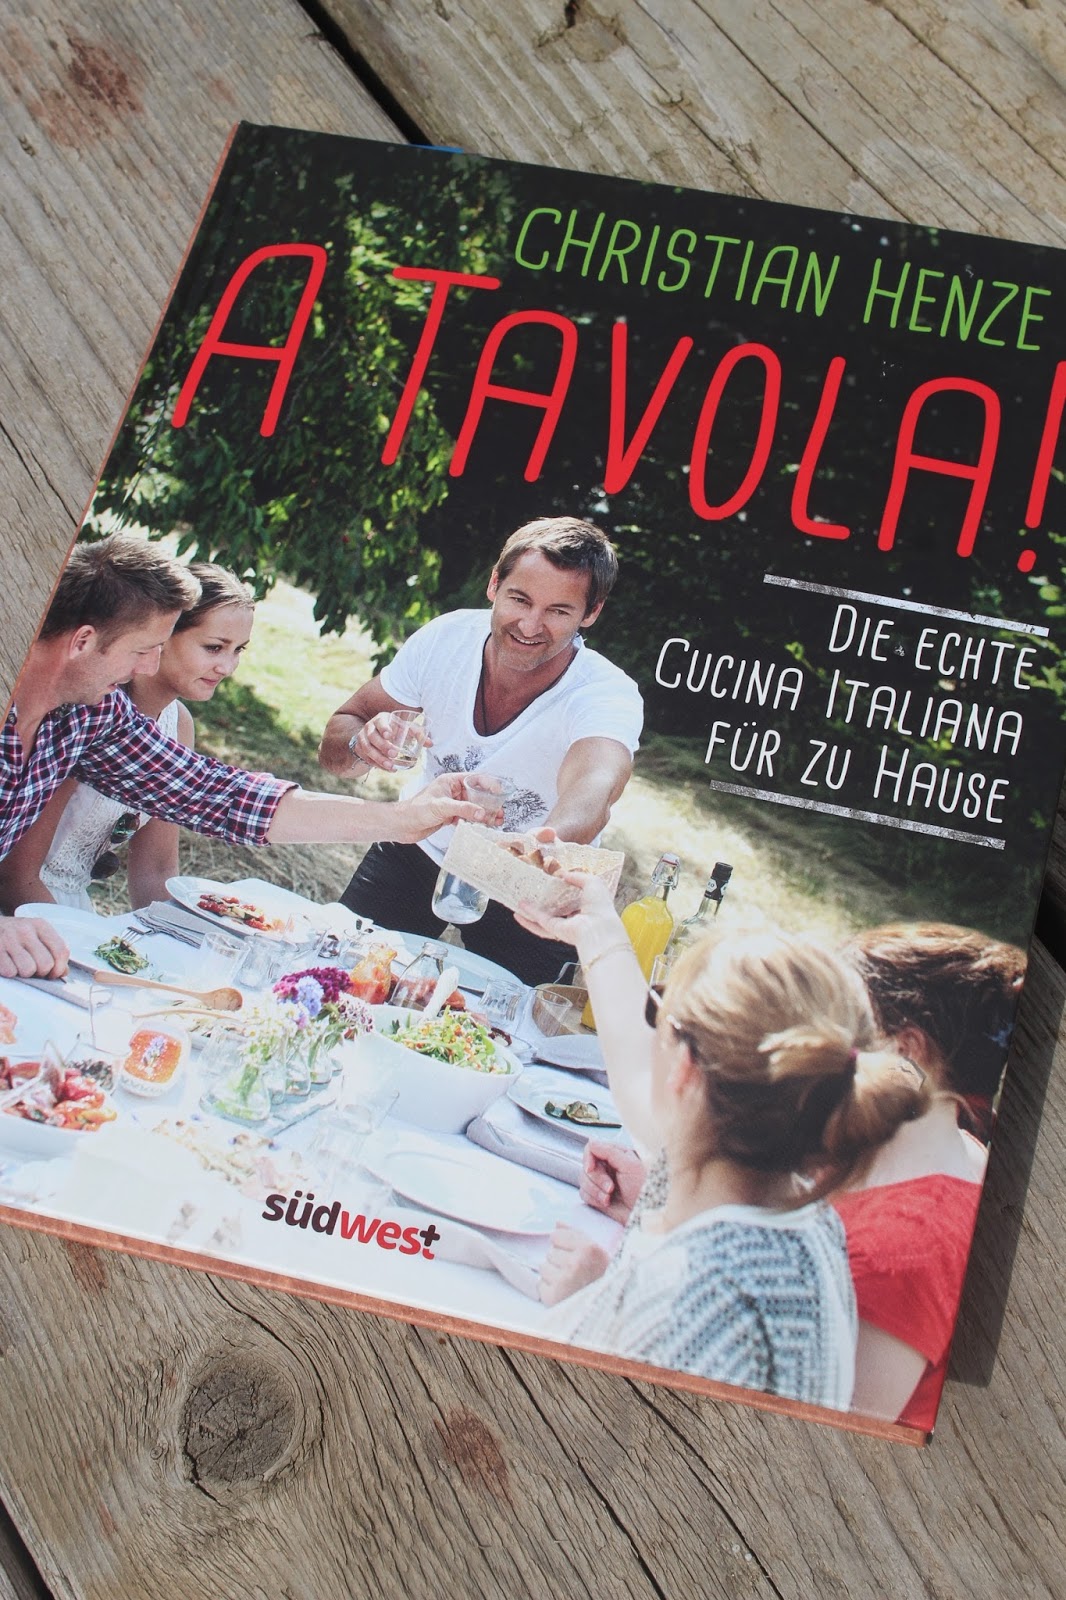 Paulas Frauchen A Tavola! Die echte Cucina Italiana für